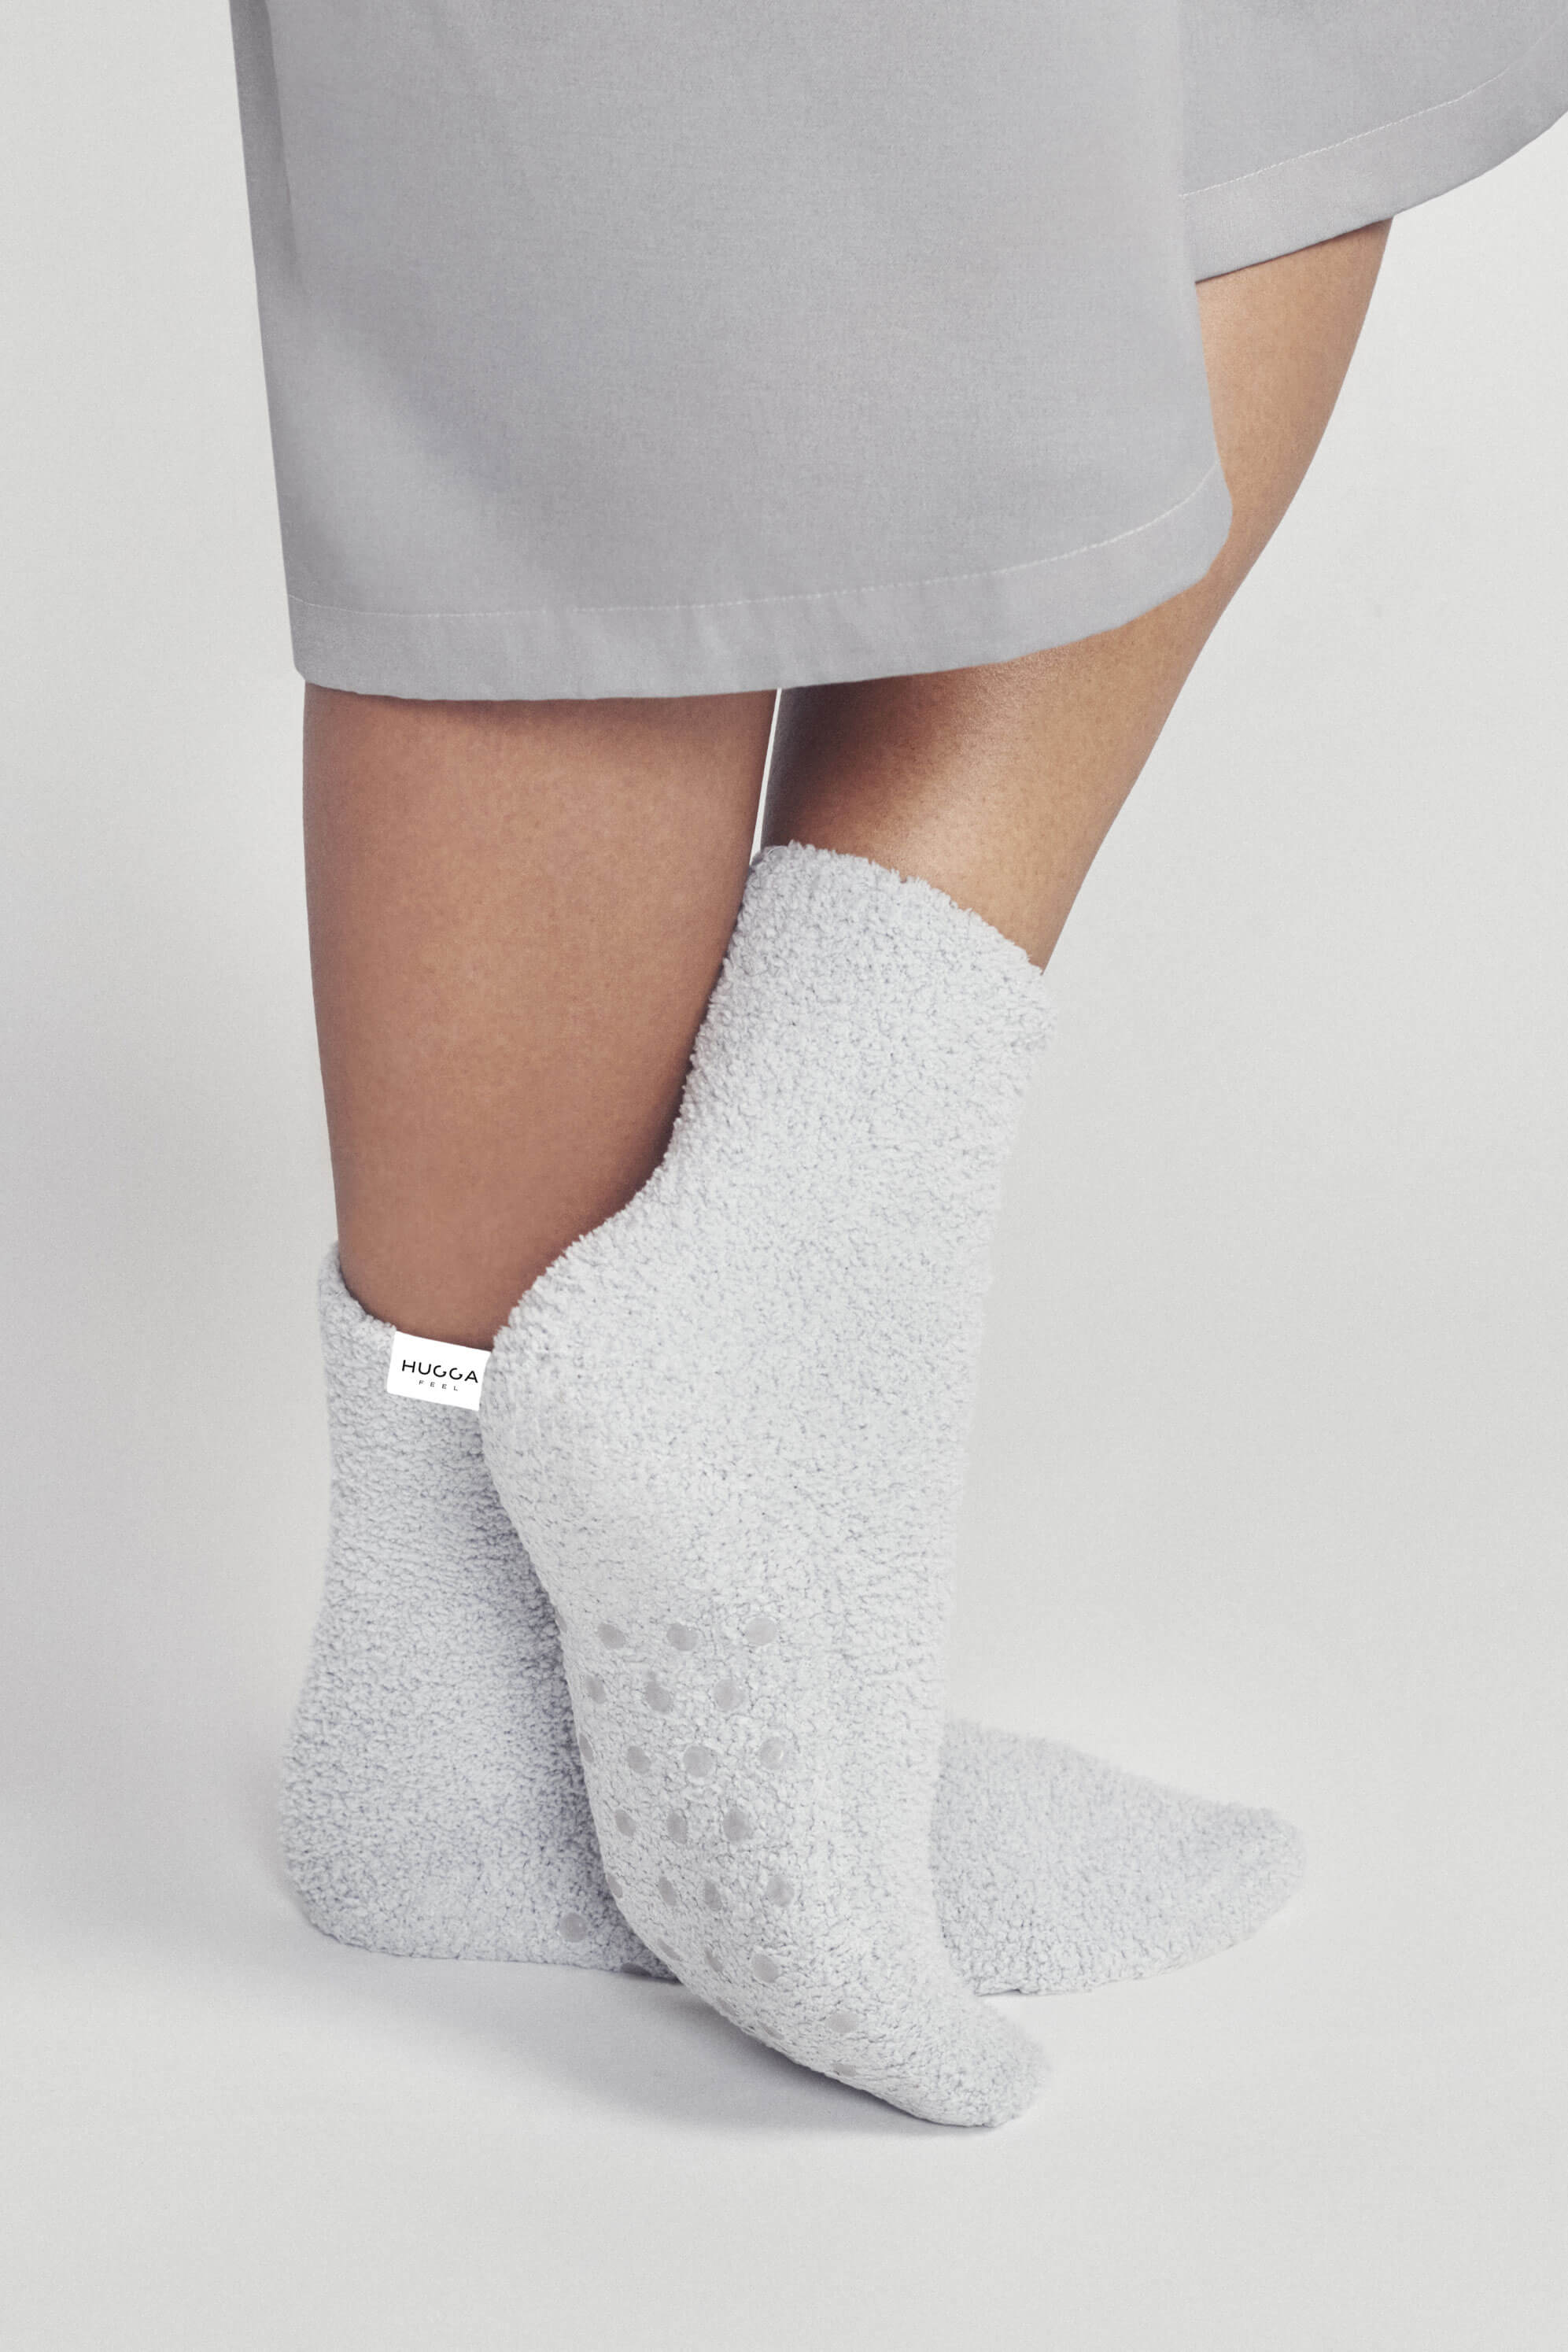 Non-Slip Cozy Hospital Socks – Hugga